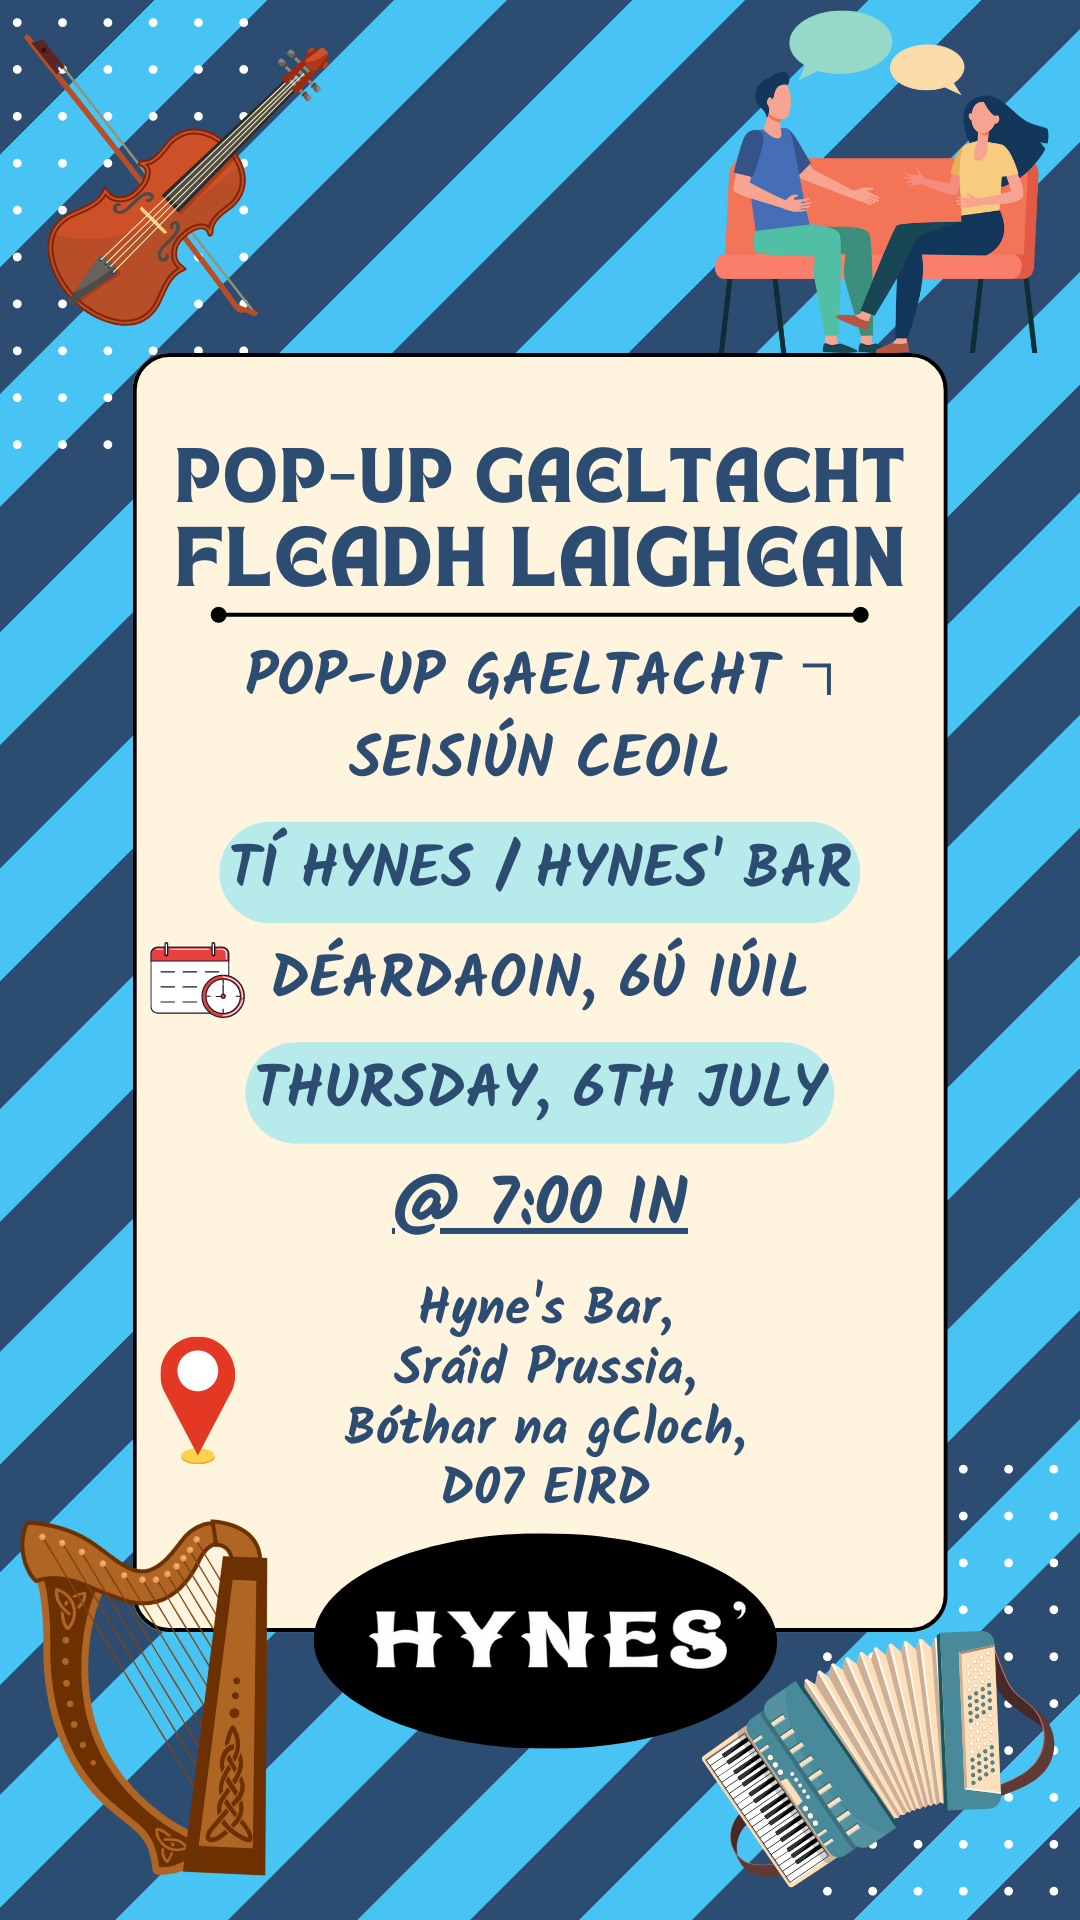 Pop-Up Gaeltacht ⁊ Fleadh Laighean